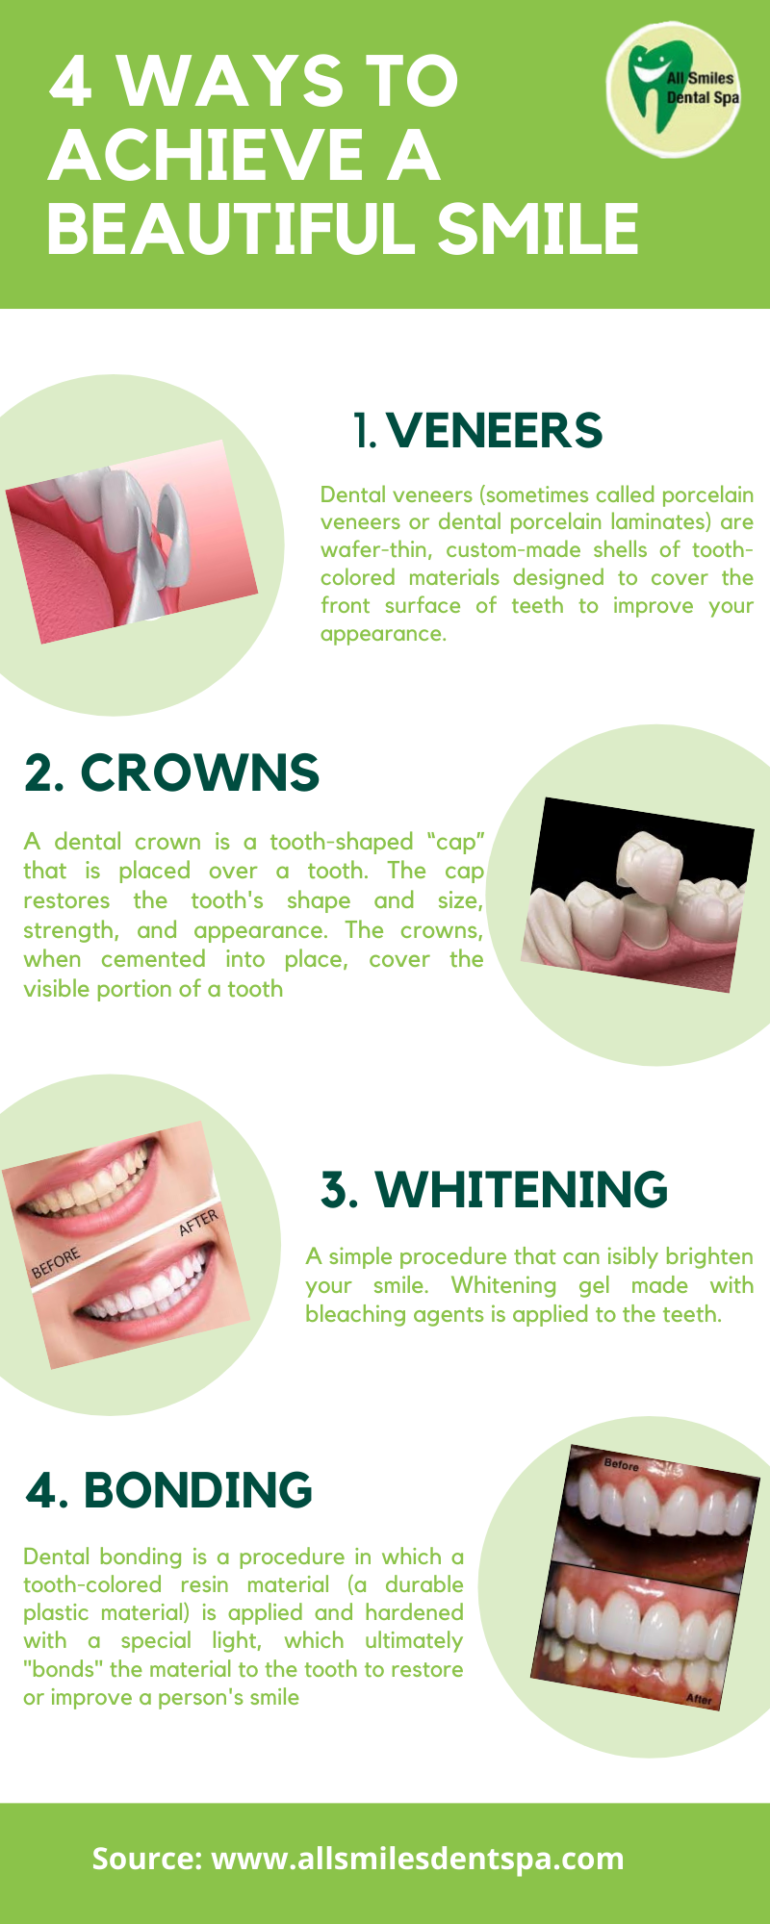 4 Ways to Achieve a Beautiful Smile | All Smiles Dental Spa Dubai